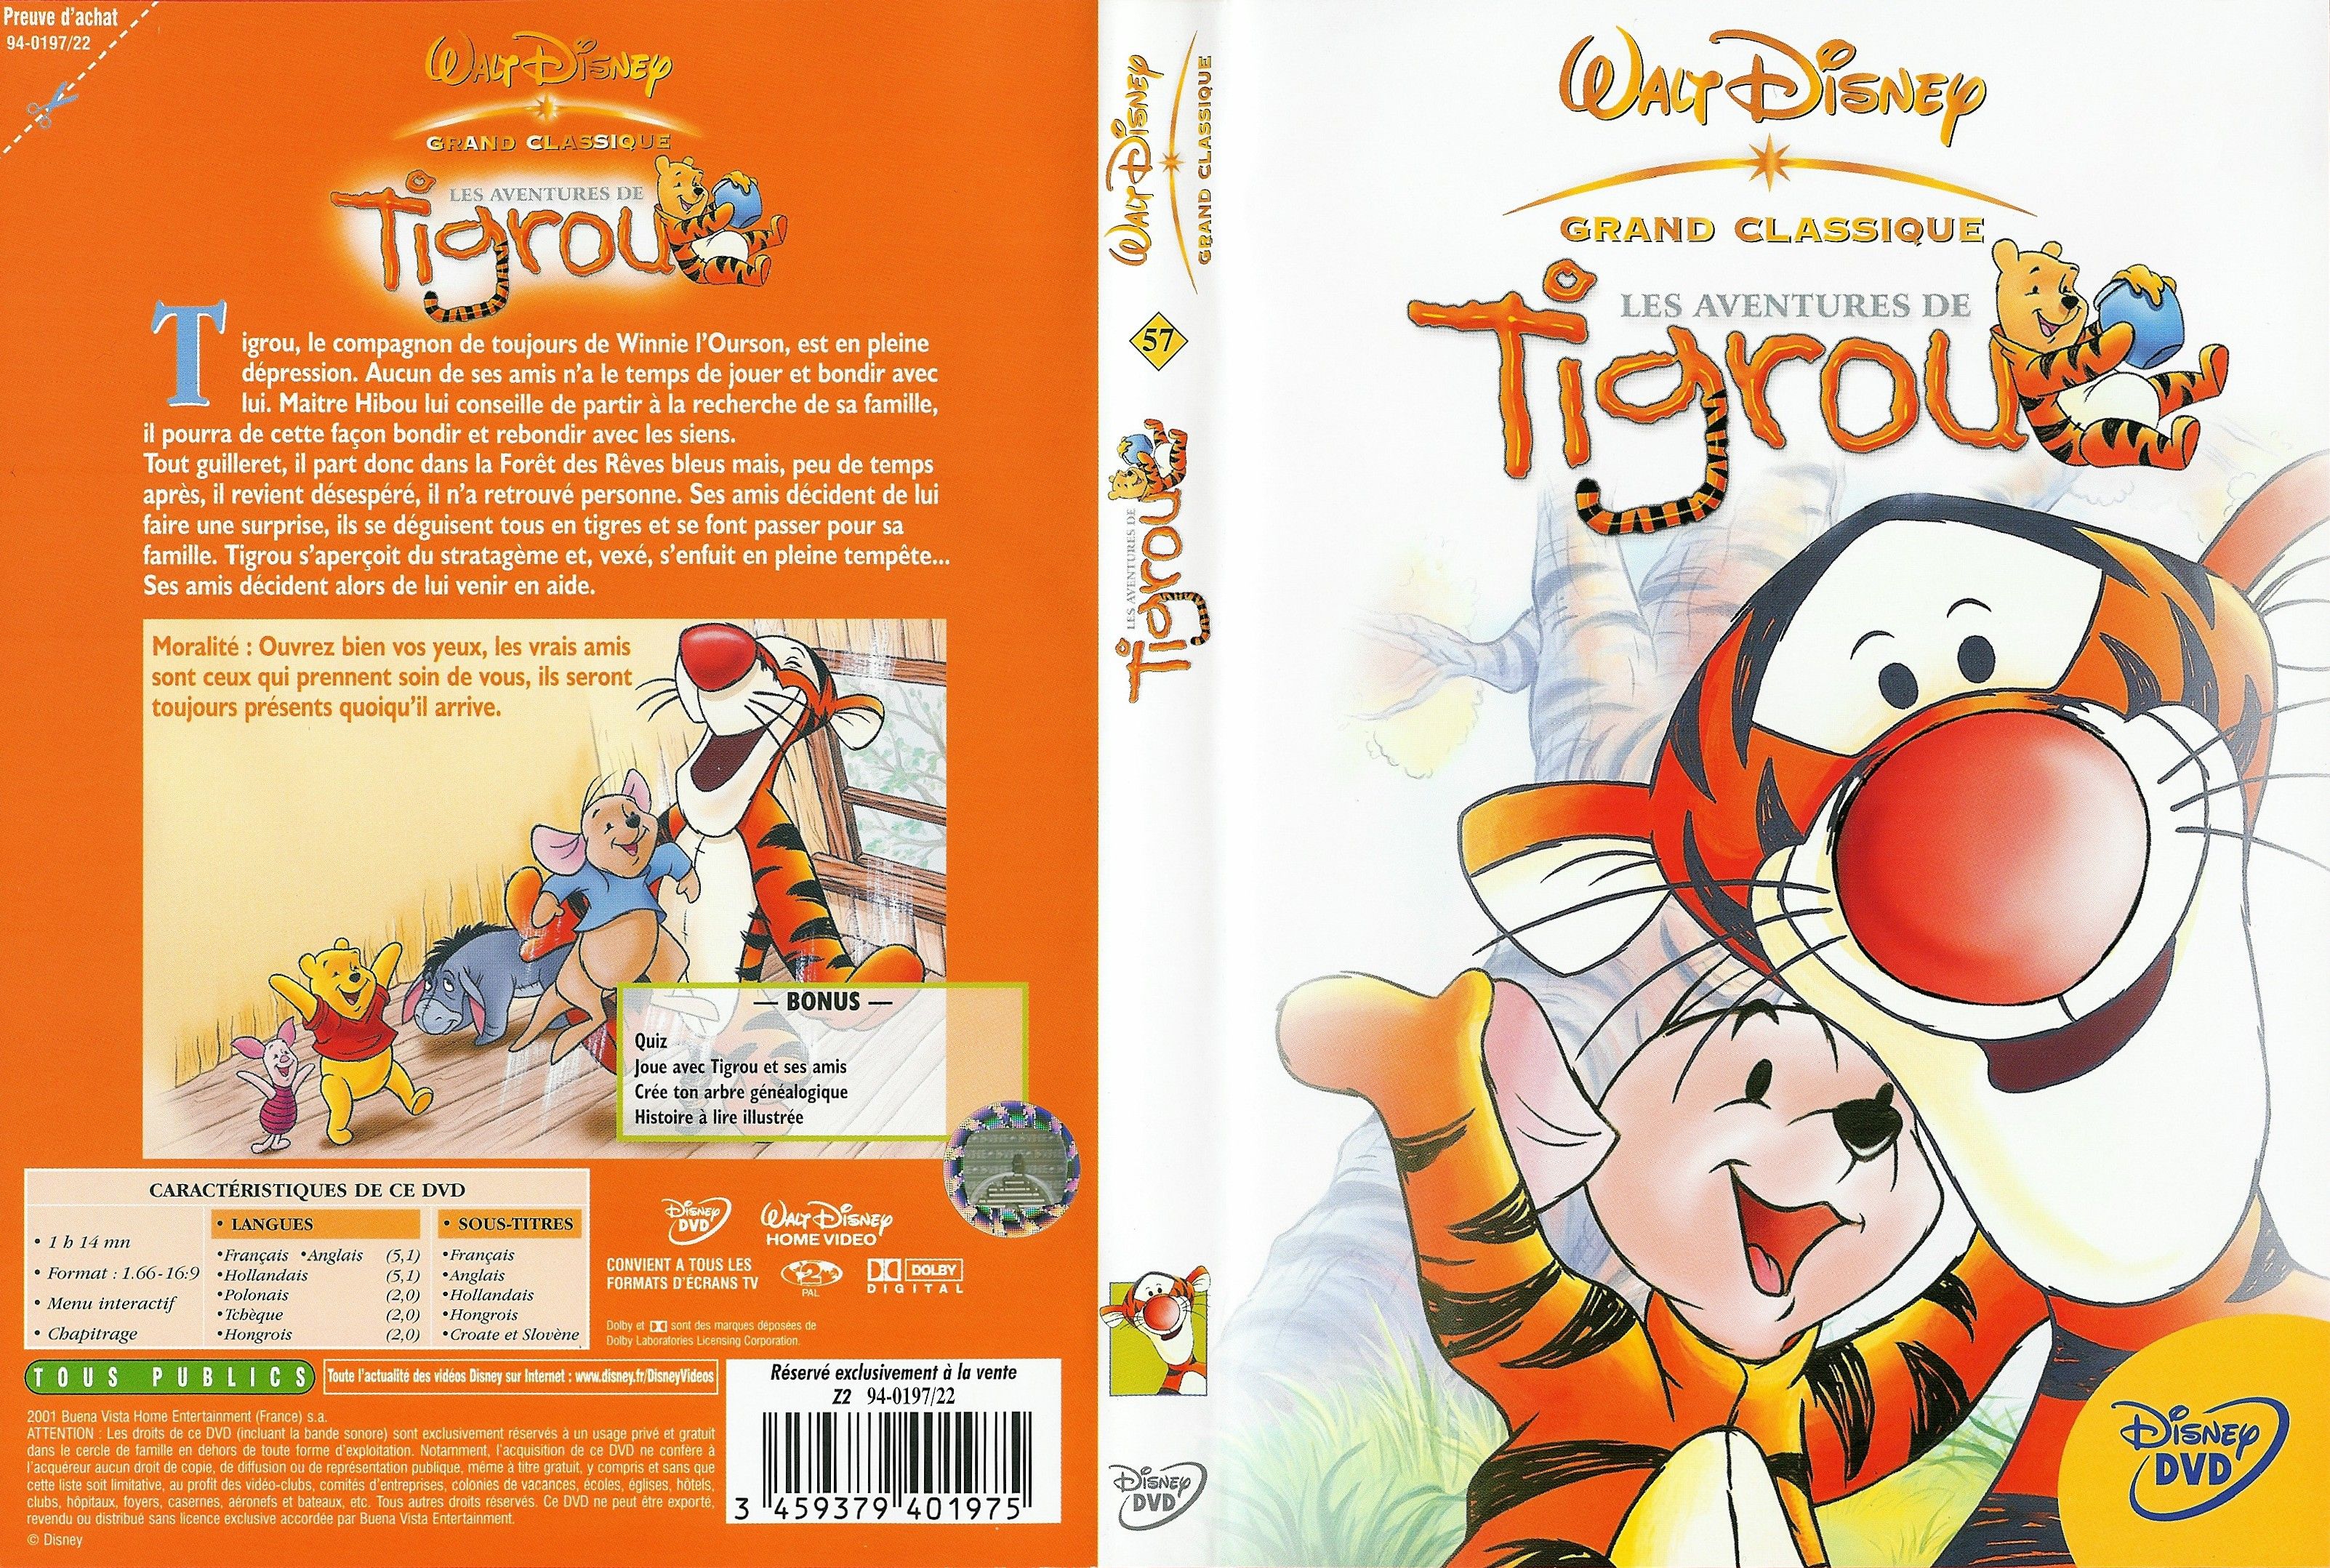 Jaquette DVD Les aventures de tigrou v2